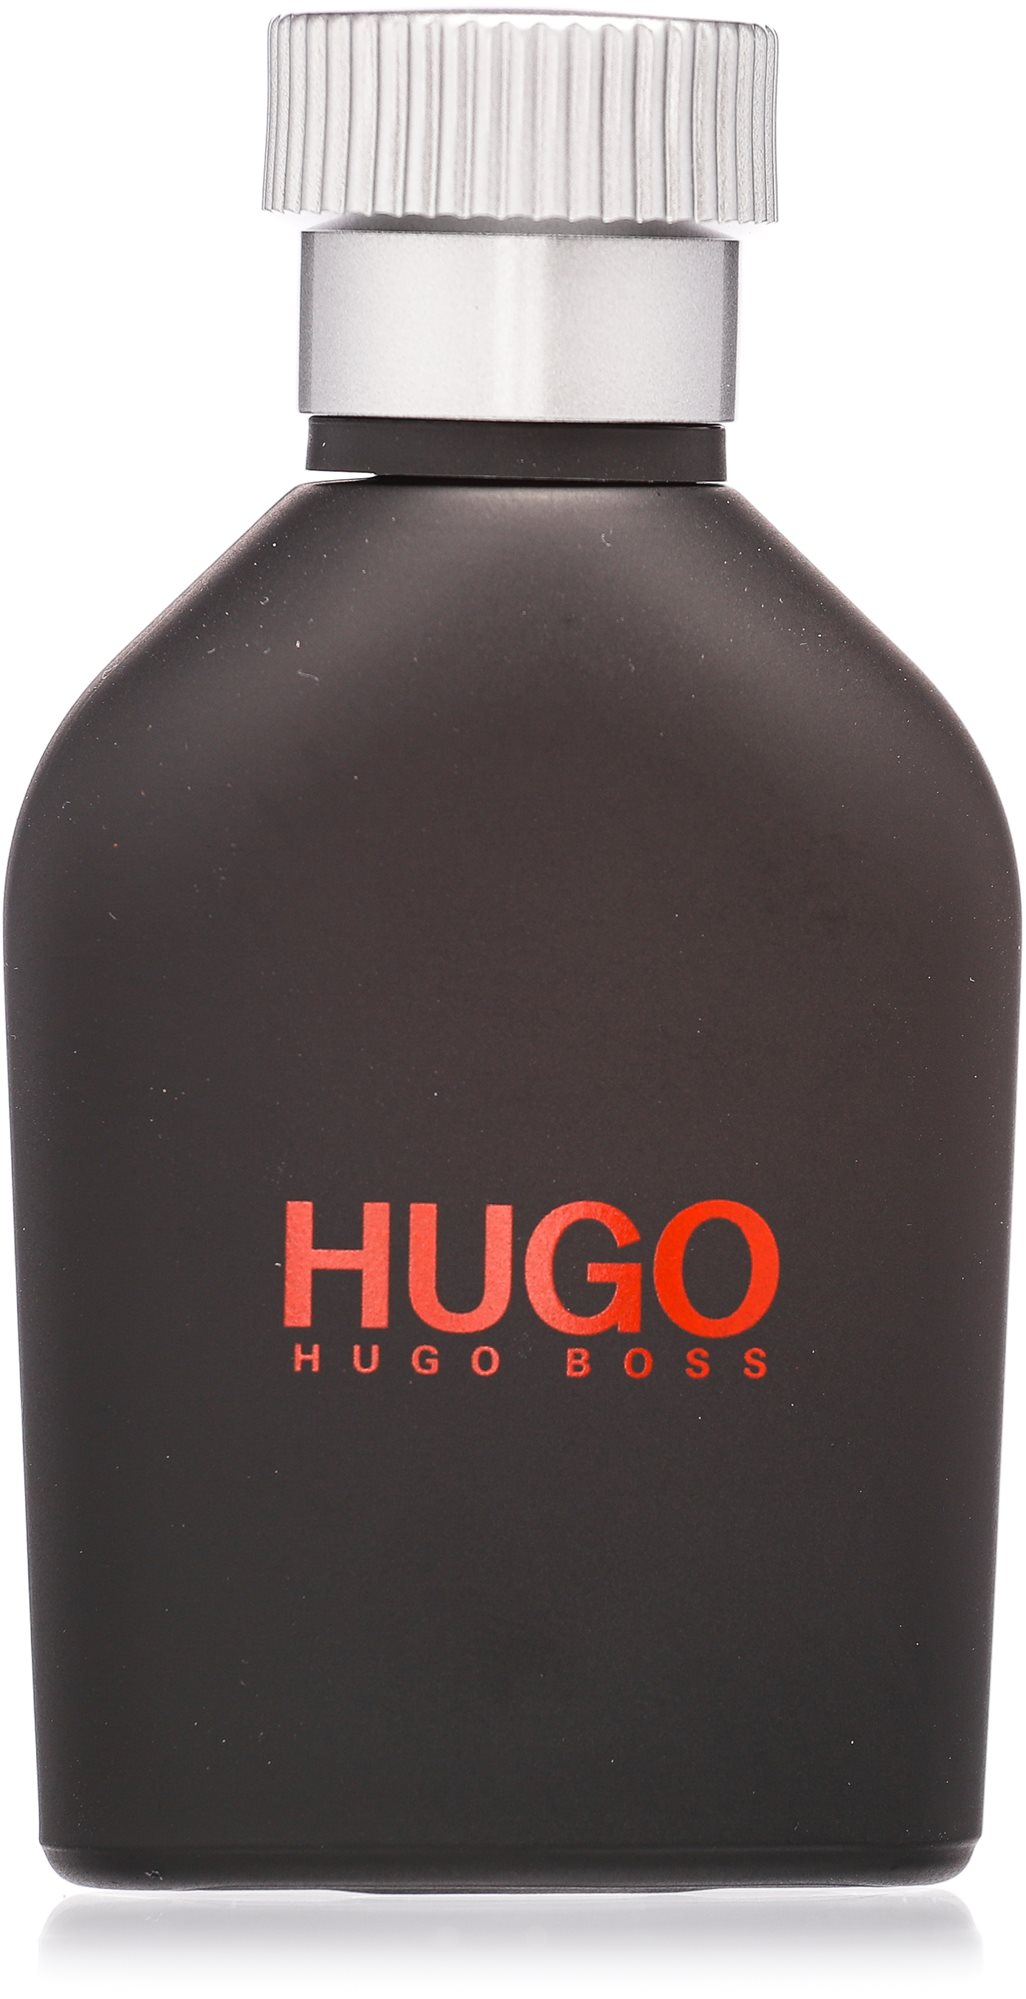 HUGO BOSS Hugo Just Different EdT